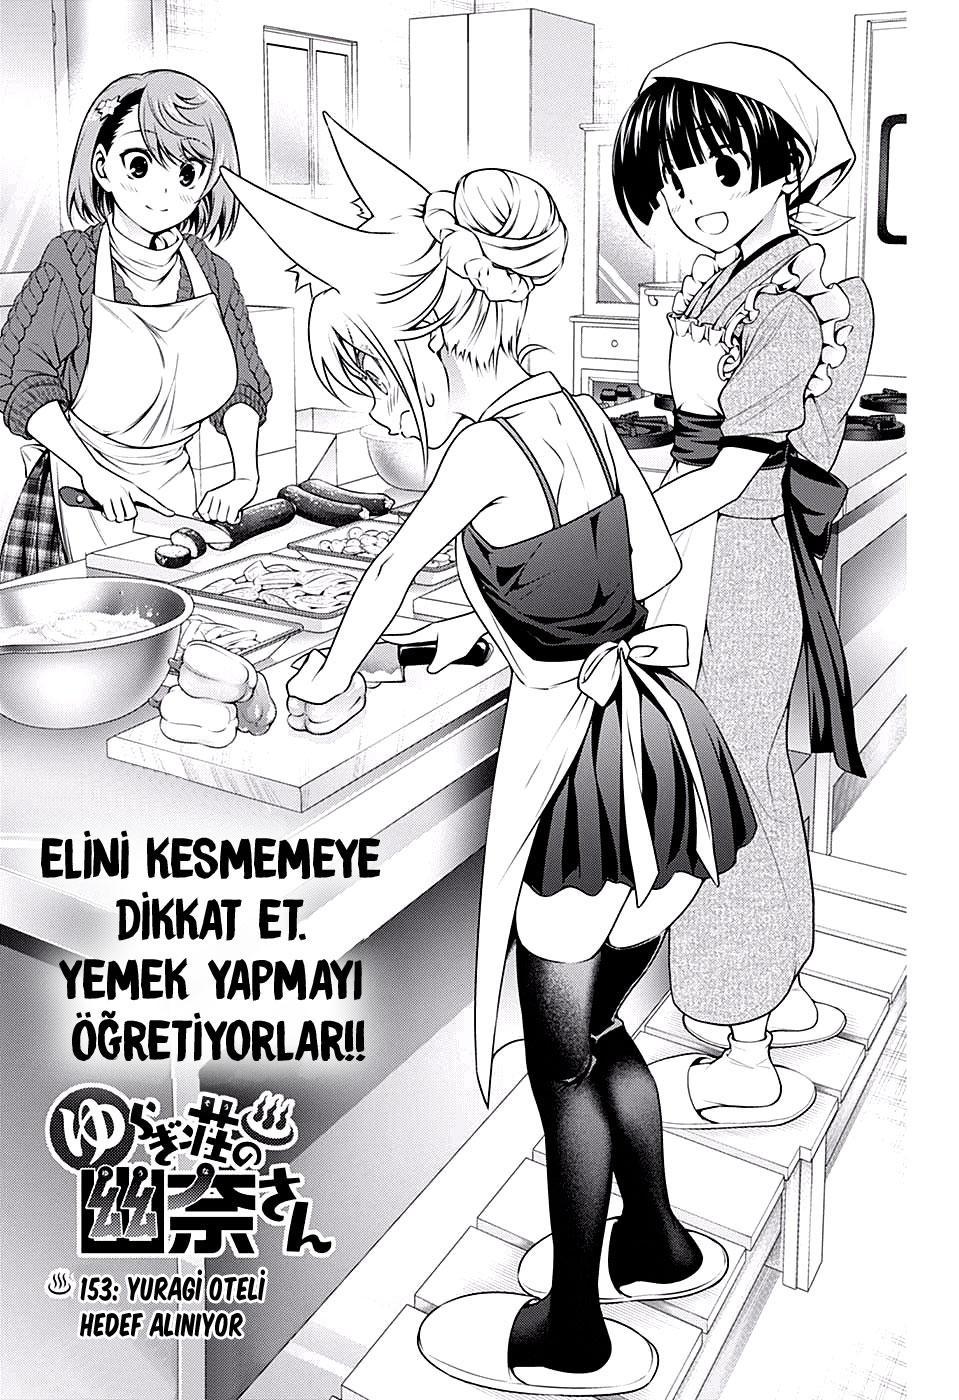 Yuragi-sou no Yuuna-san mangasının 153 bölümünün 2. sayfasını okuyorsunuz.